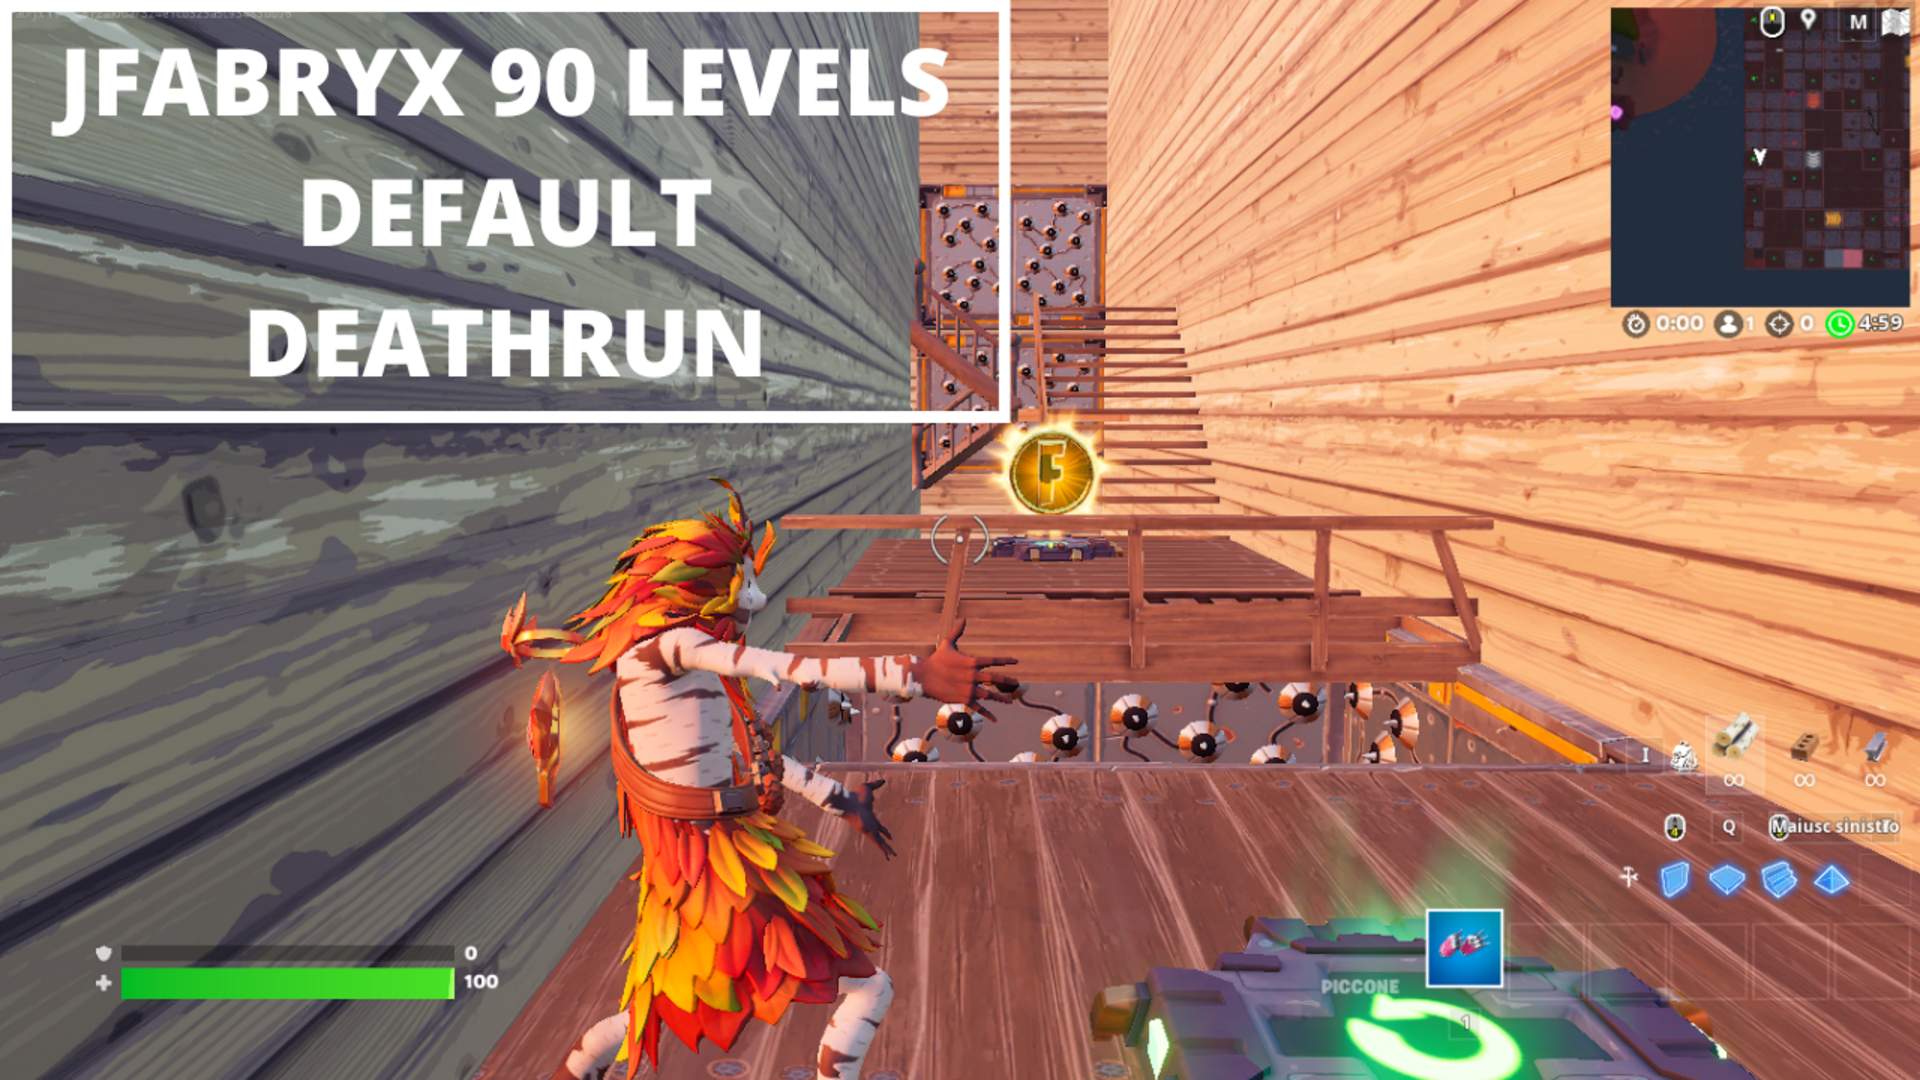 JFabryx 90 Levels Default Deathrun